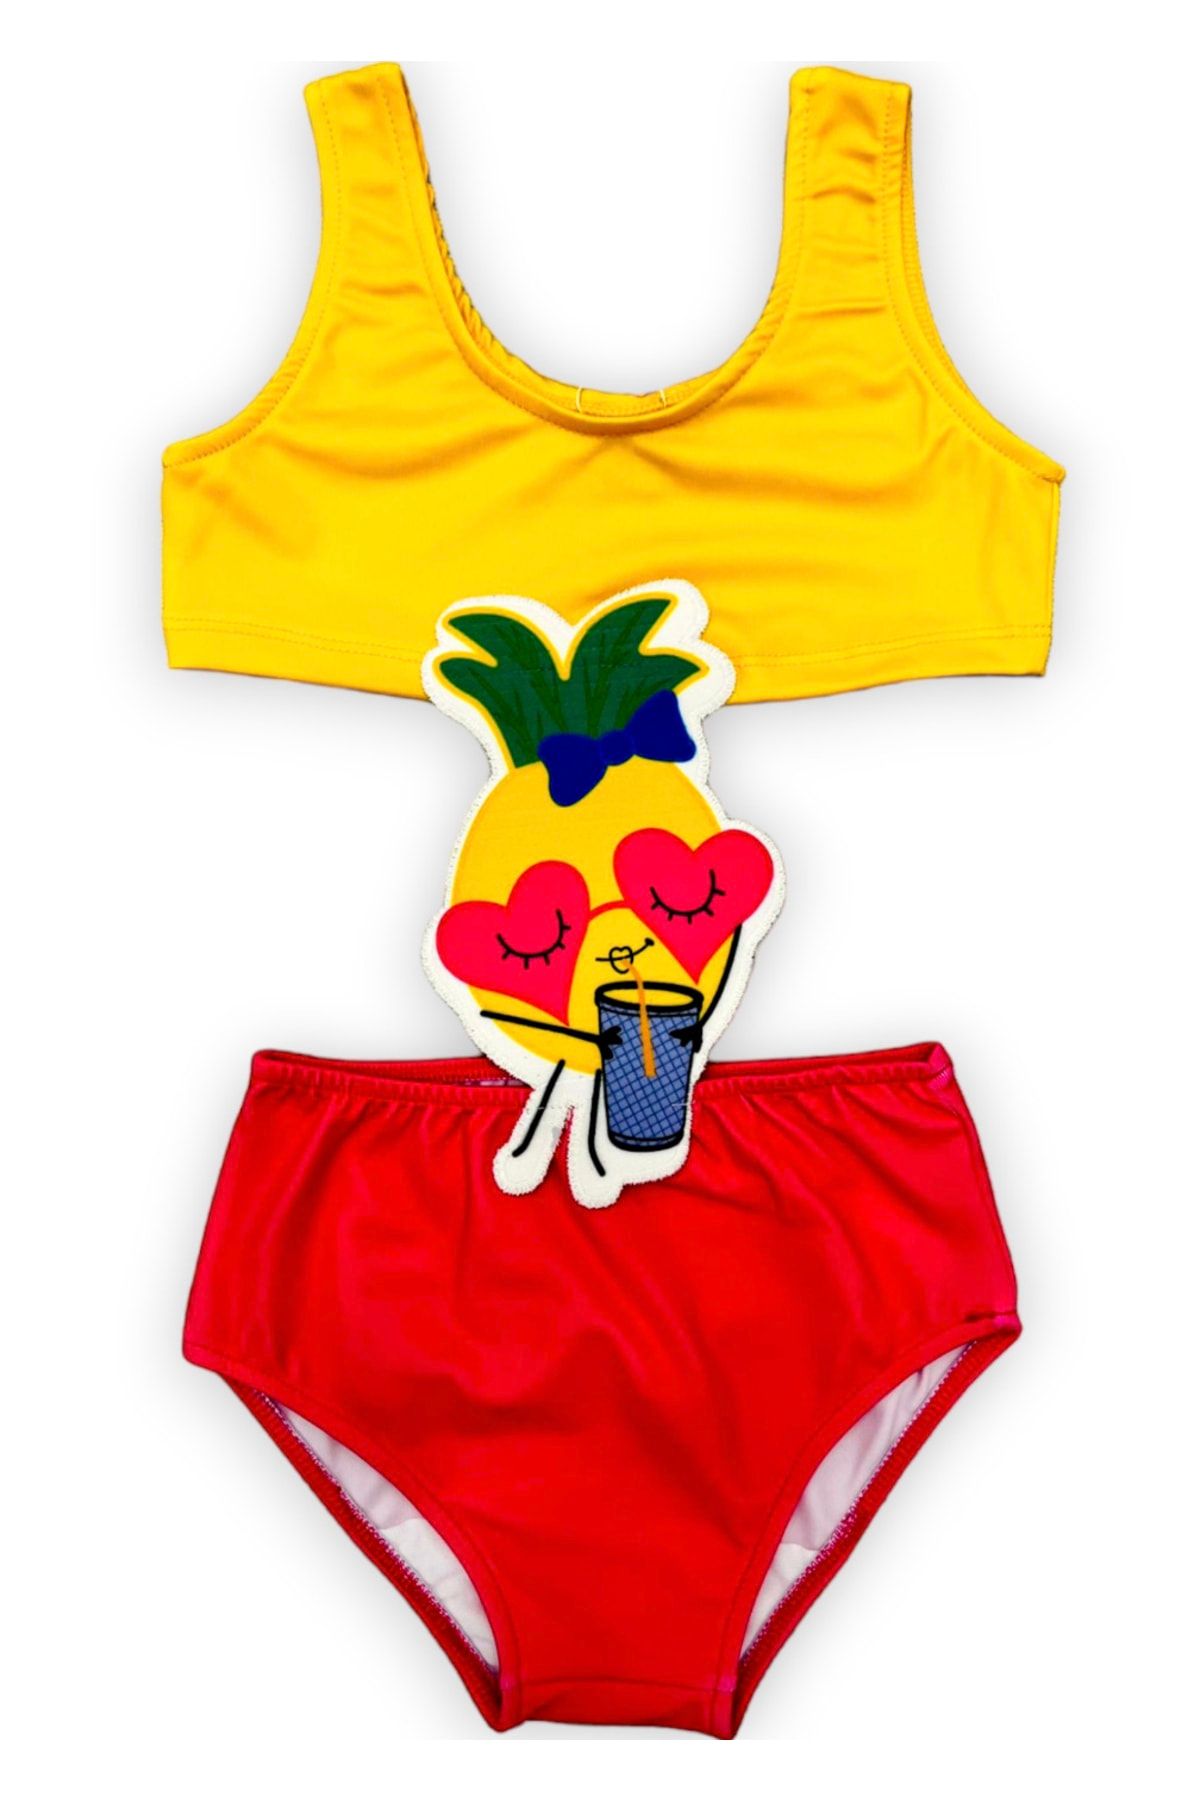 Lolliboomkids Kız Çocuk Çizgi Film Karakterli Figürlü Mayokini Yeni Sezon Sarı Kırmızı Meyve Suyu Ananas Figurlü